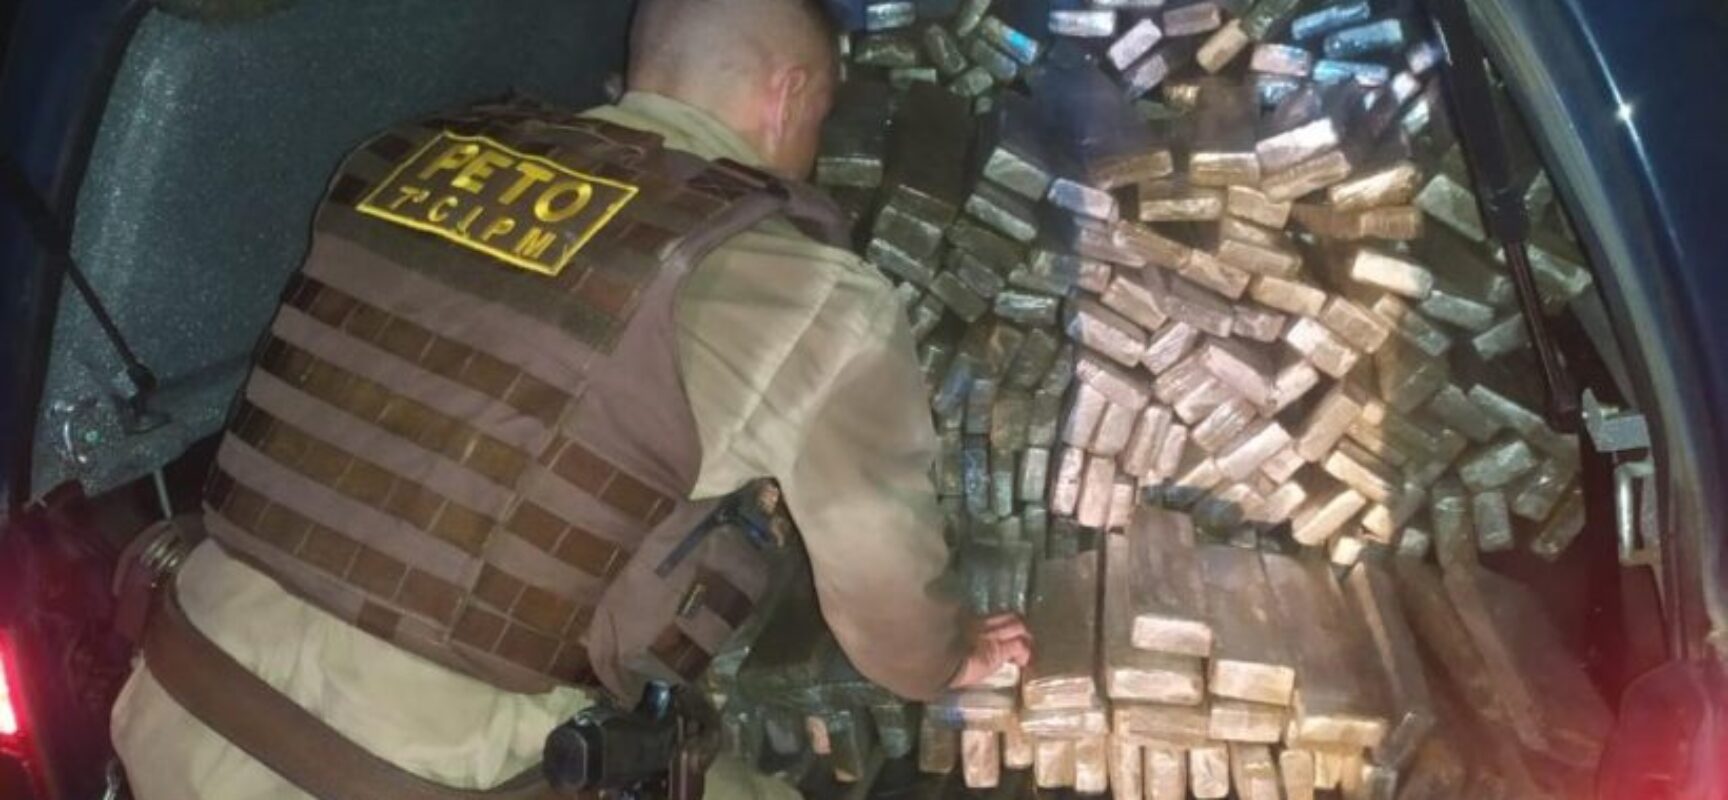 Polícia apreende 515 quilos de maconha em carro com placa adulterada